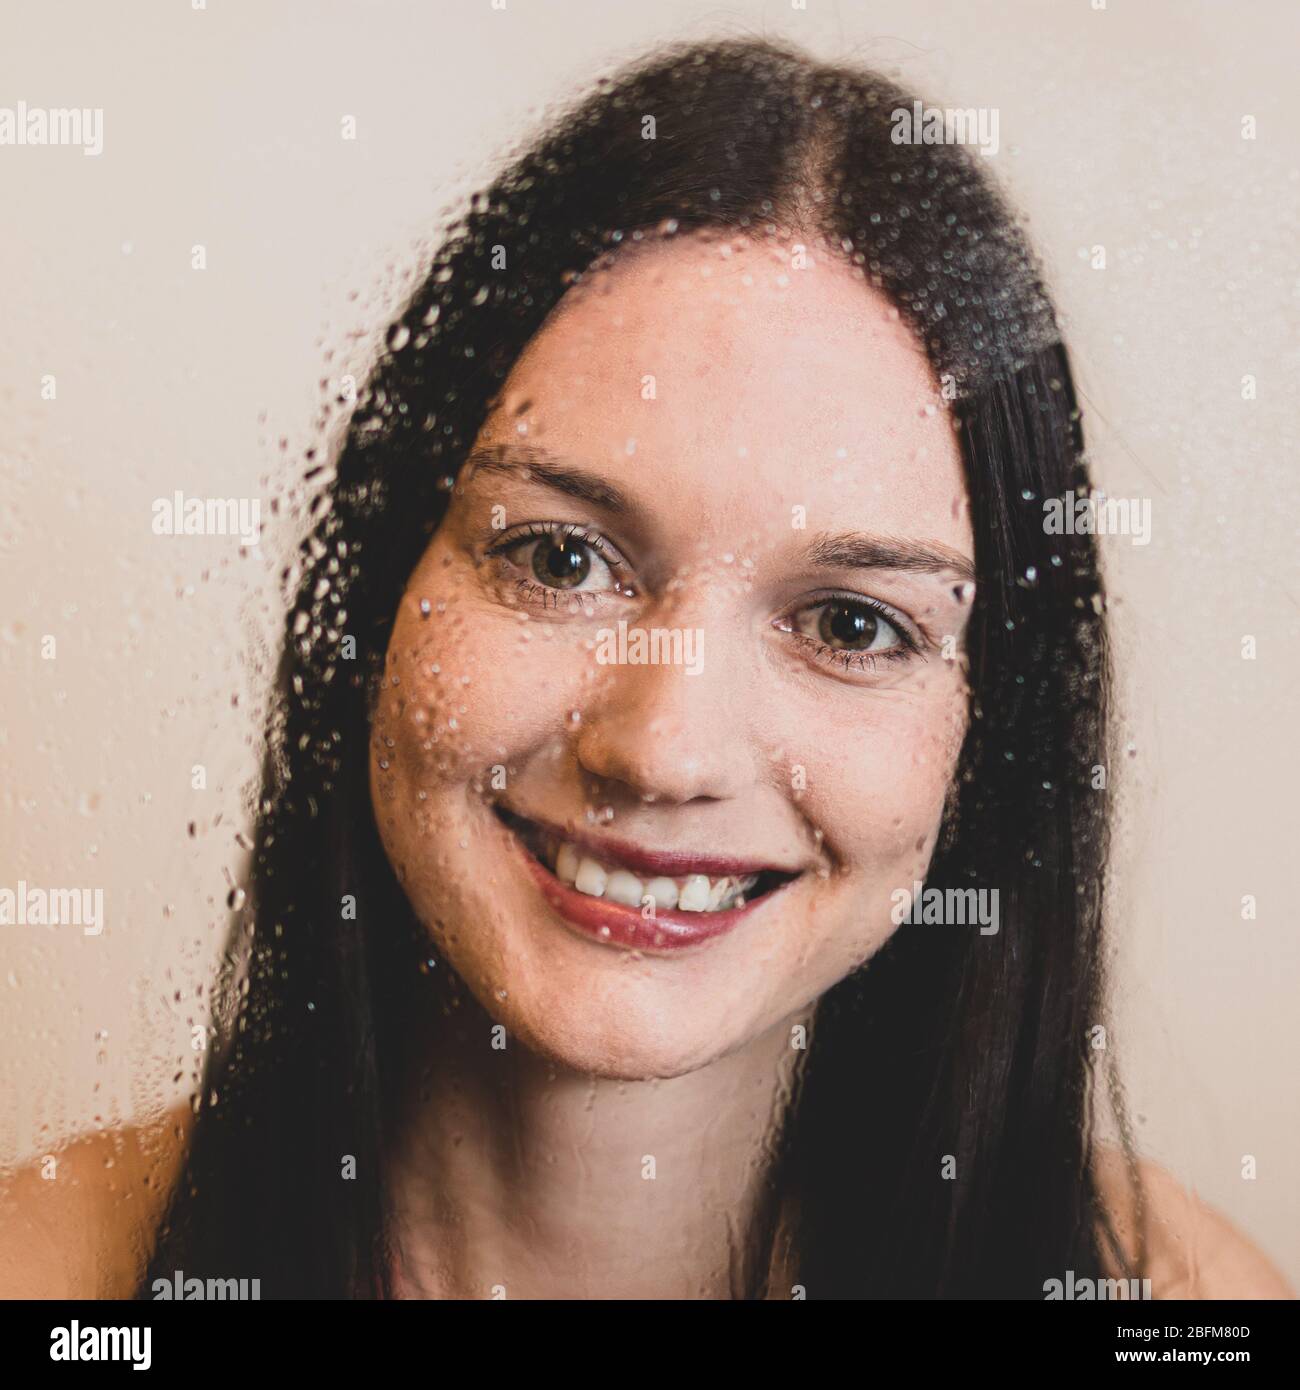 Visage de heureuse fille avec des cheveux longs et des lèvres rouges souriant derrière une fenêtre de verre humide. Photo libre de droit. Banque D'Images